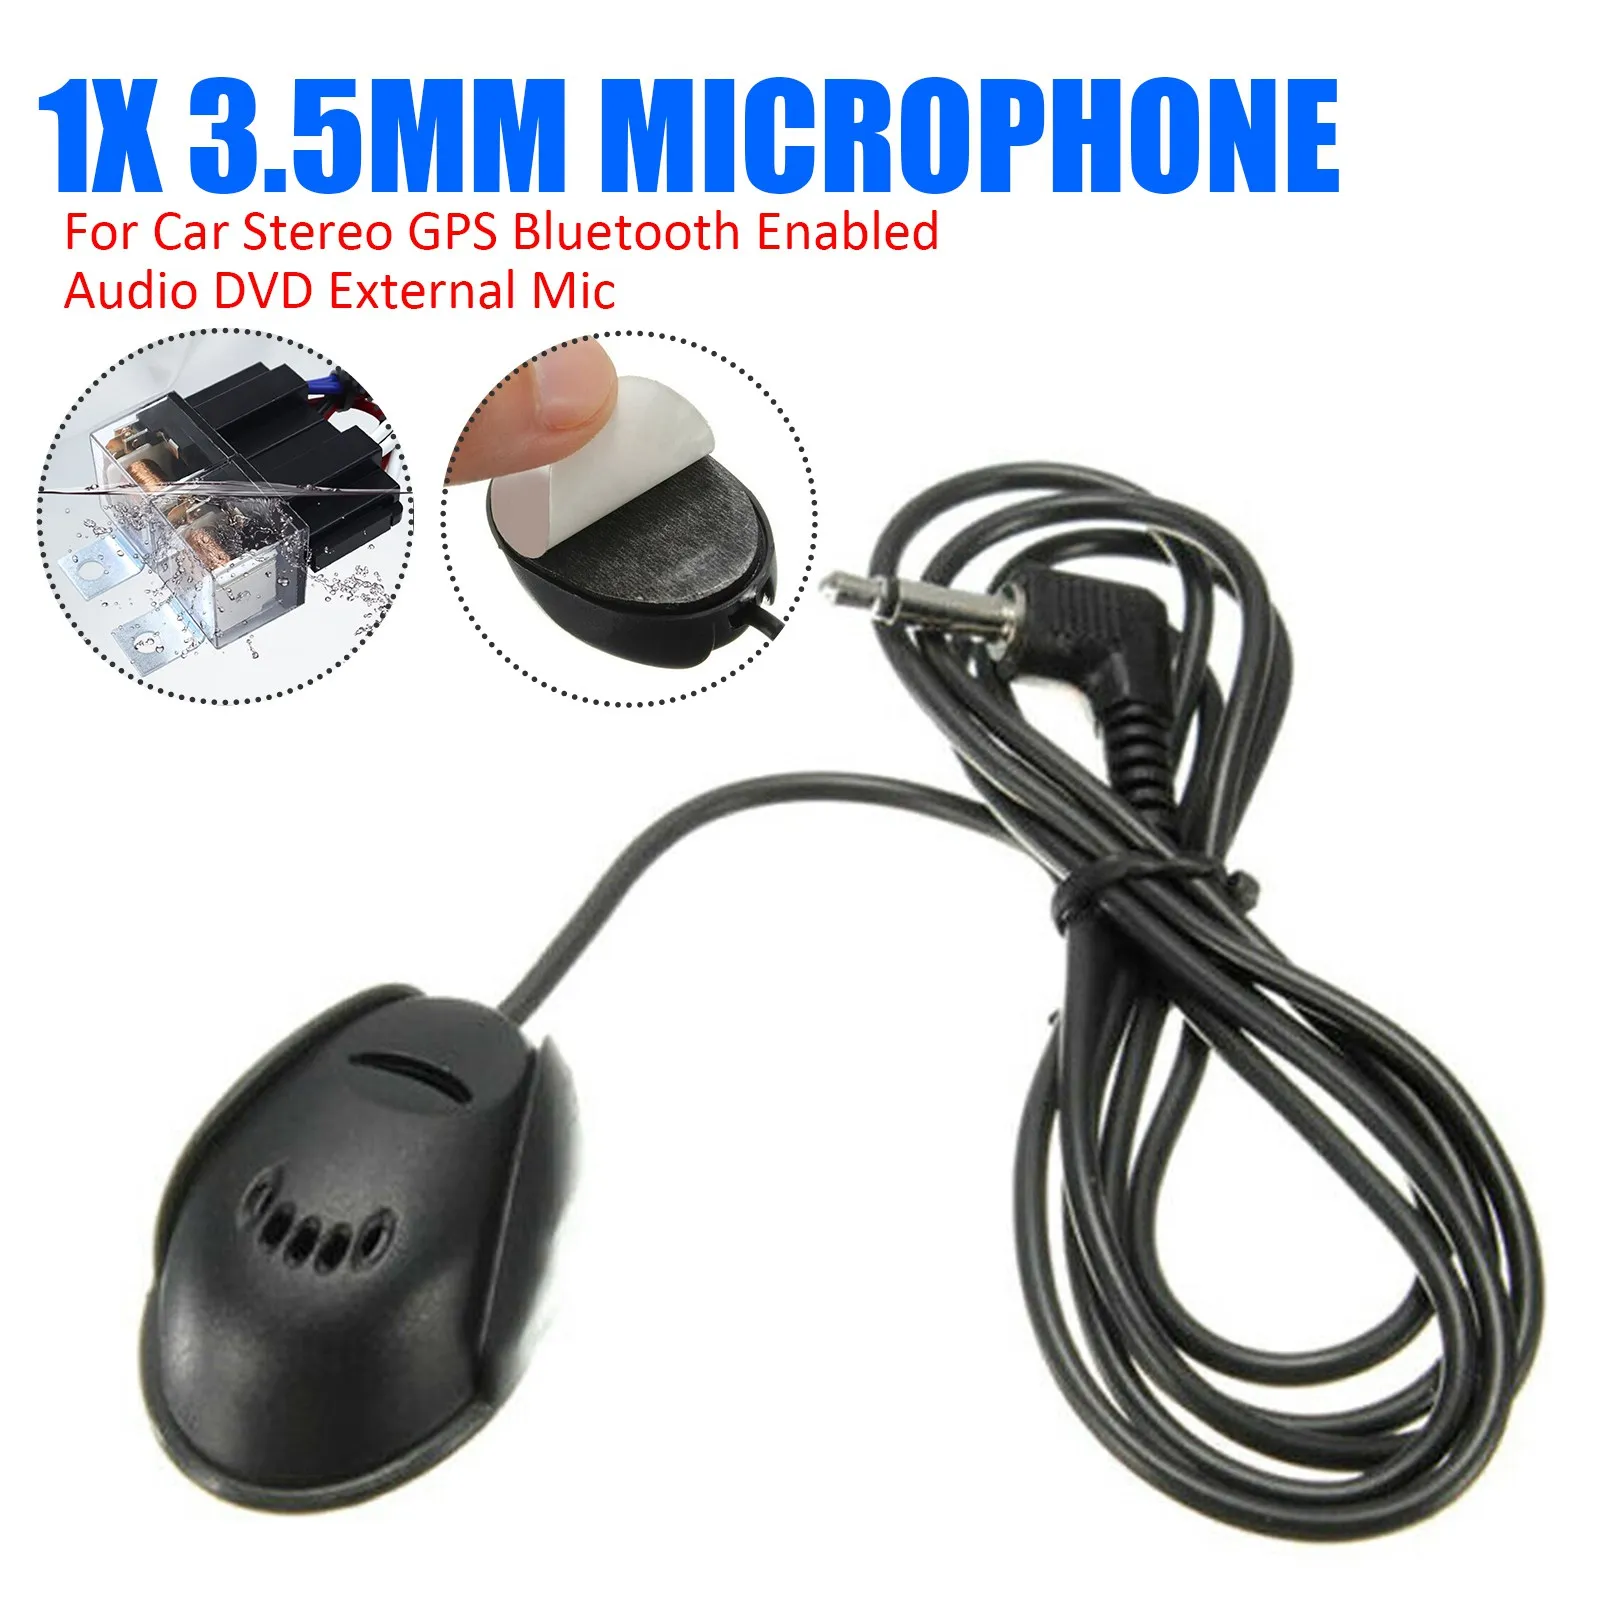 

1x3,5 мм микрофон для автомобильной стереосистемы GPS Bluetooth с поддержкой аудио DVD внешний микрофон